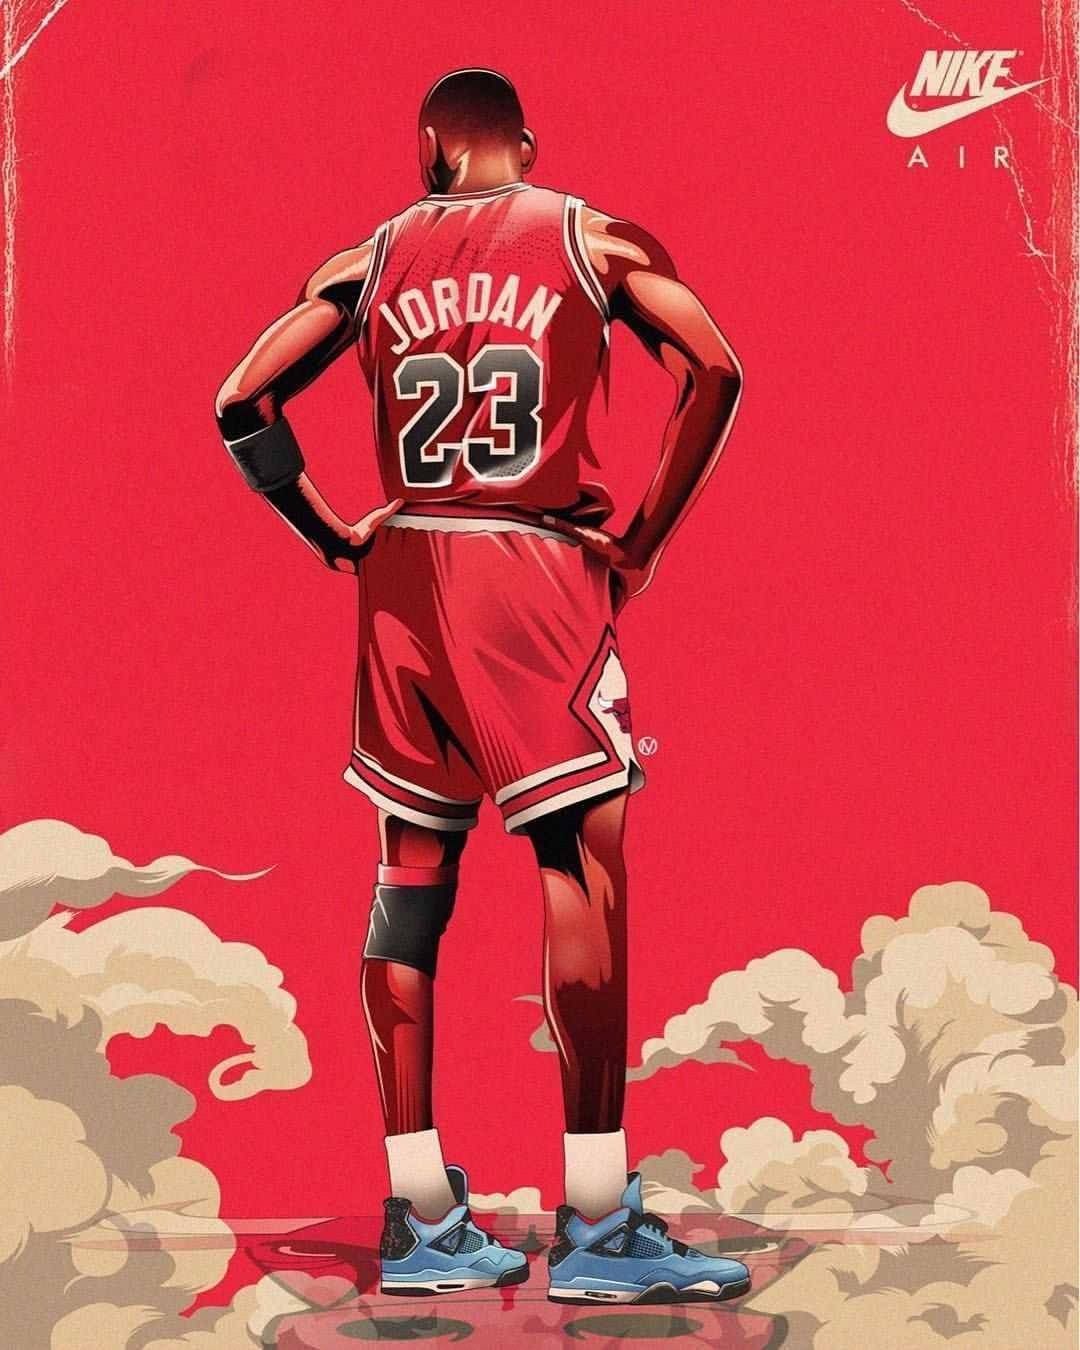 Download Cool Nike Air Michael Jordan Art Wallpaper